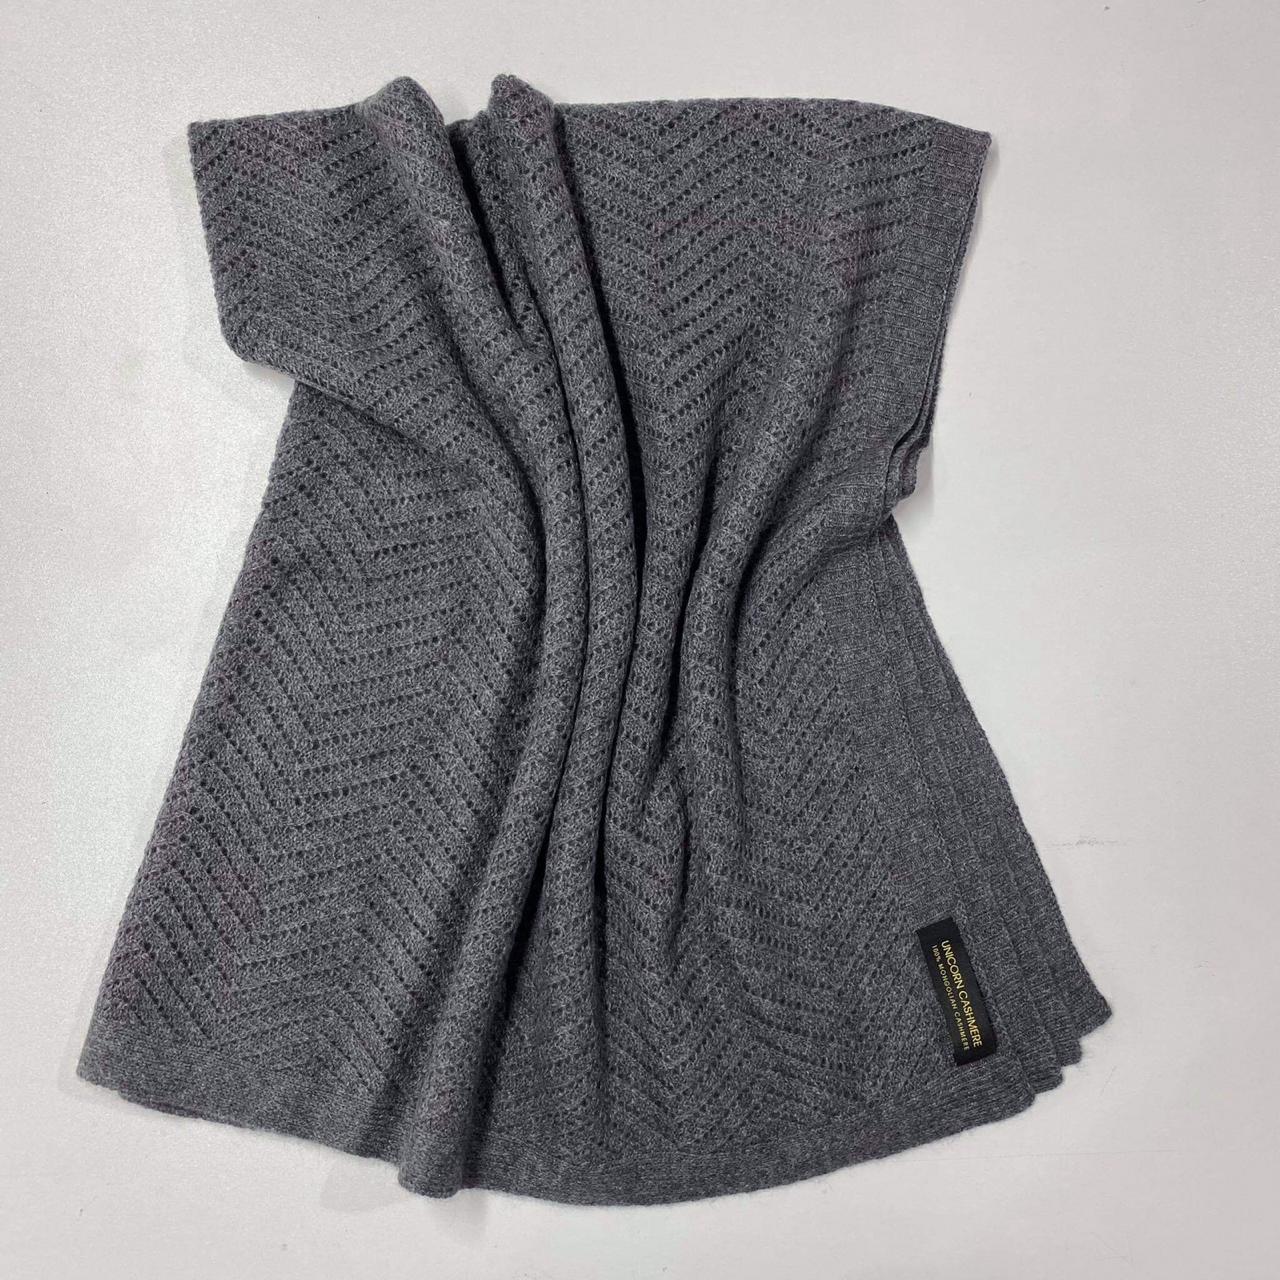 Blanket / Shawl: Le Tolui  - Pure Mongolian Cashmere